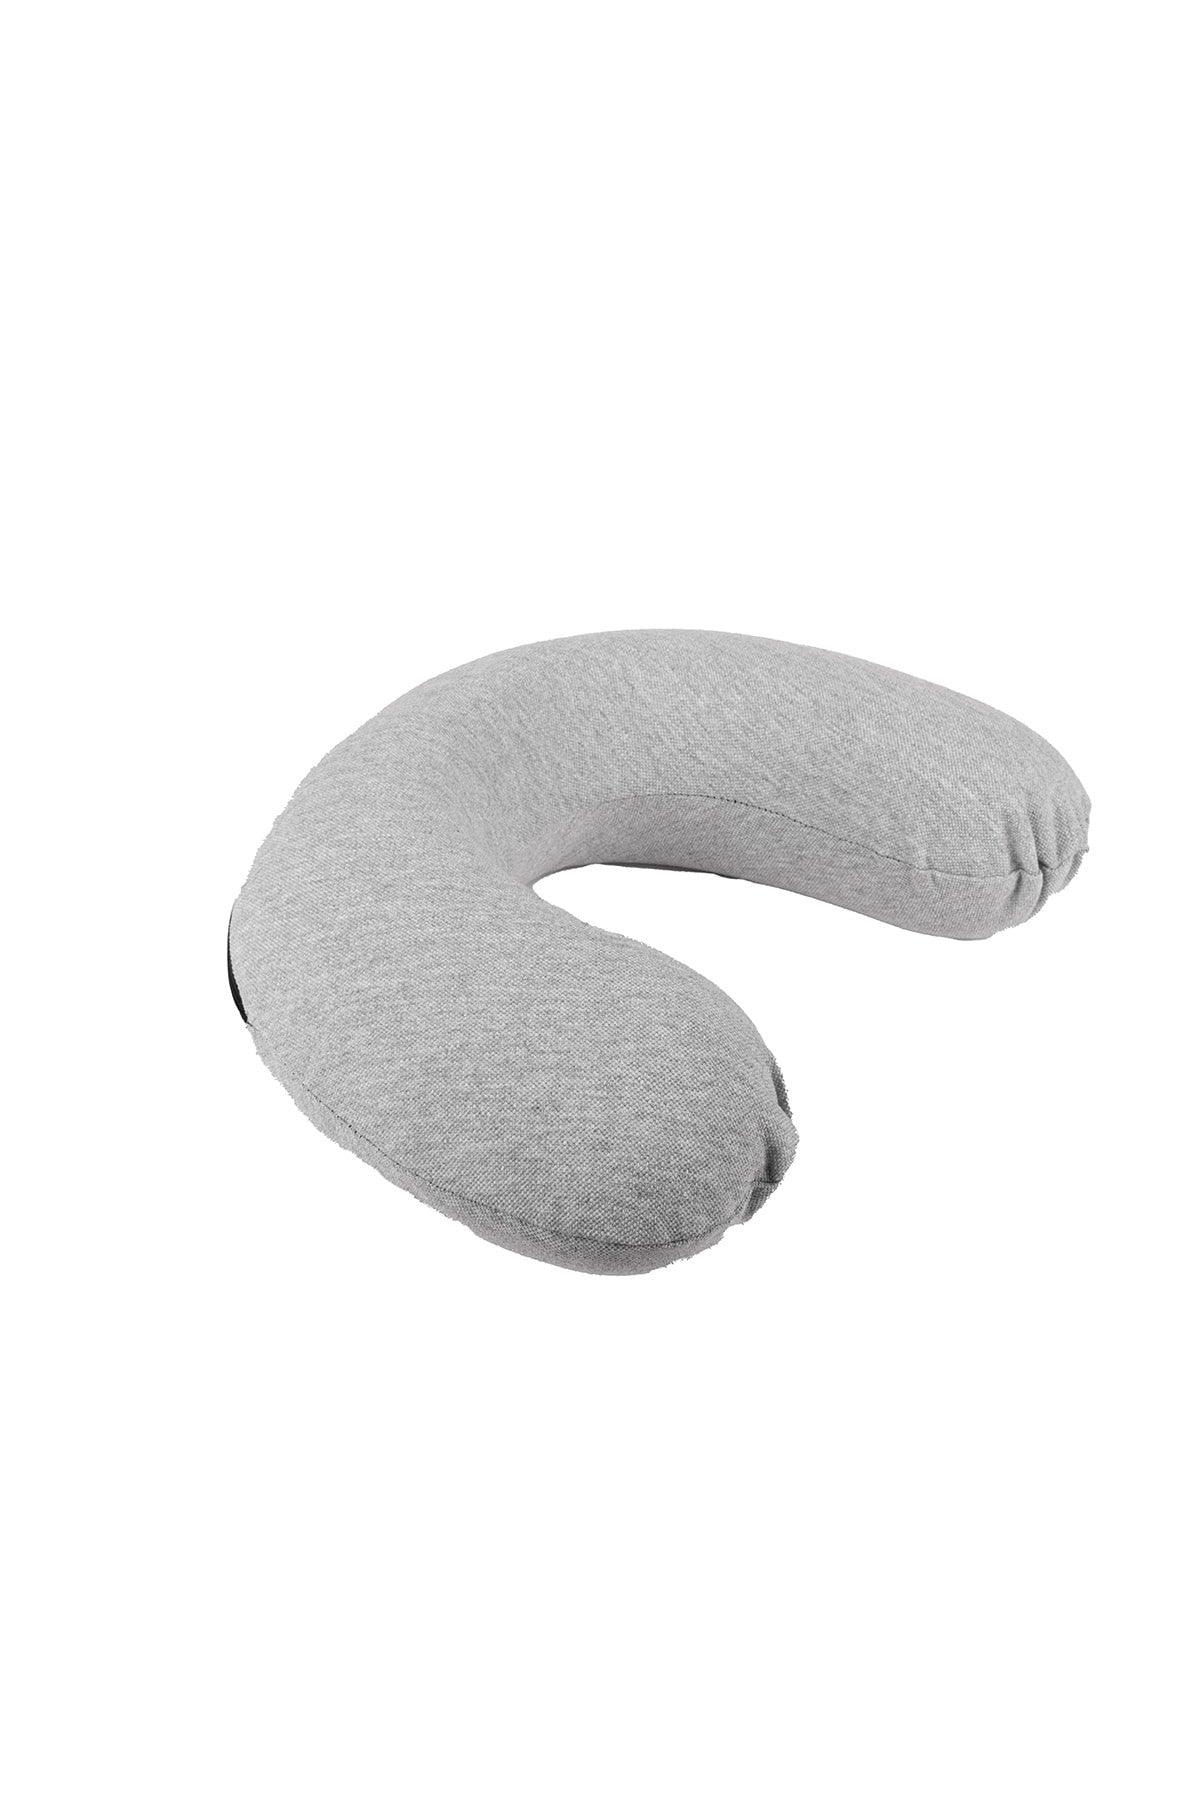 Visco Neck Pillow Orthopedic Visco Travel Neck Pillow Gray - Swordslife